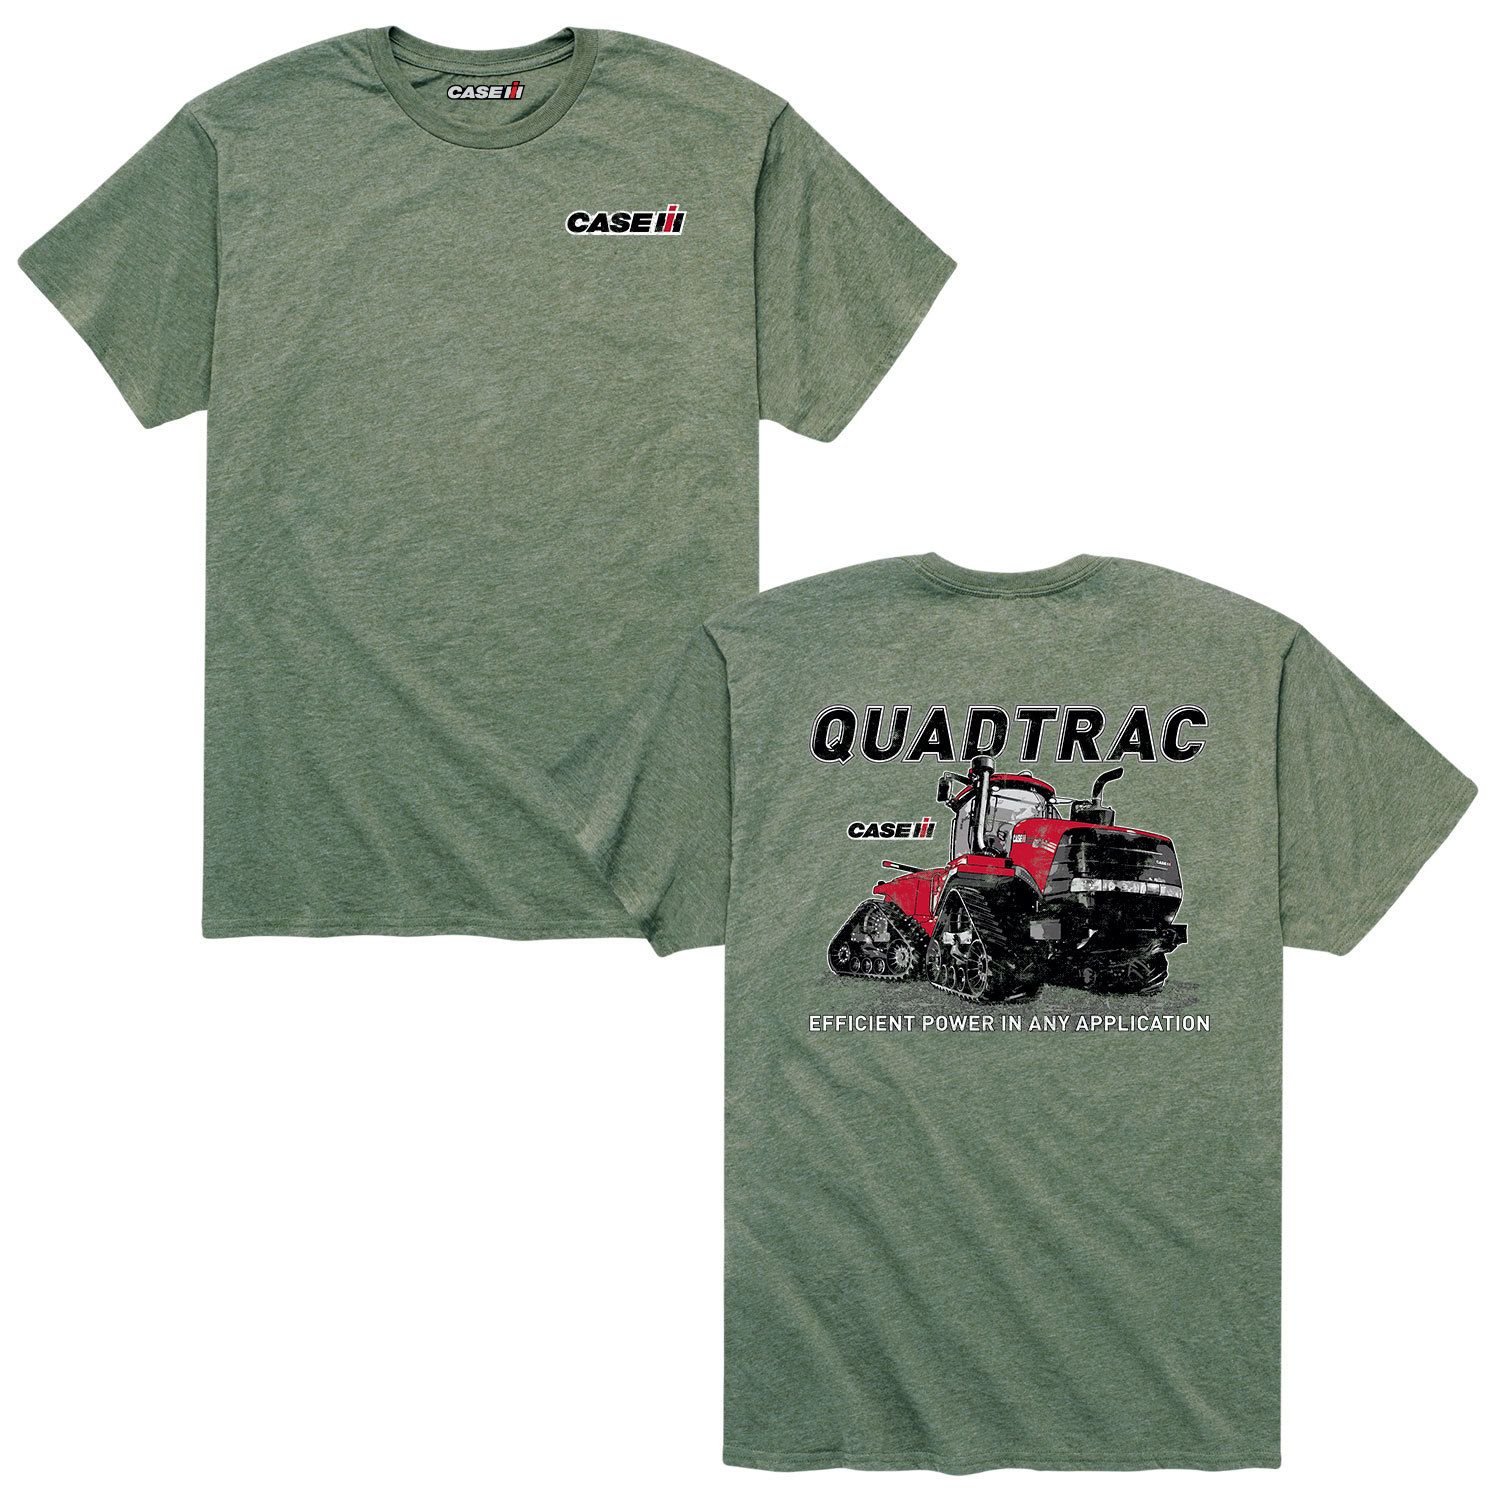 Мужская футболка Case IH Quadtrac Licensed Character